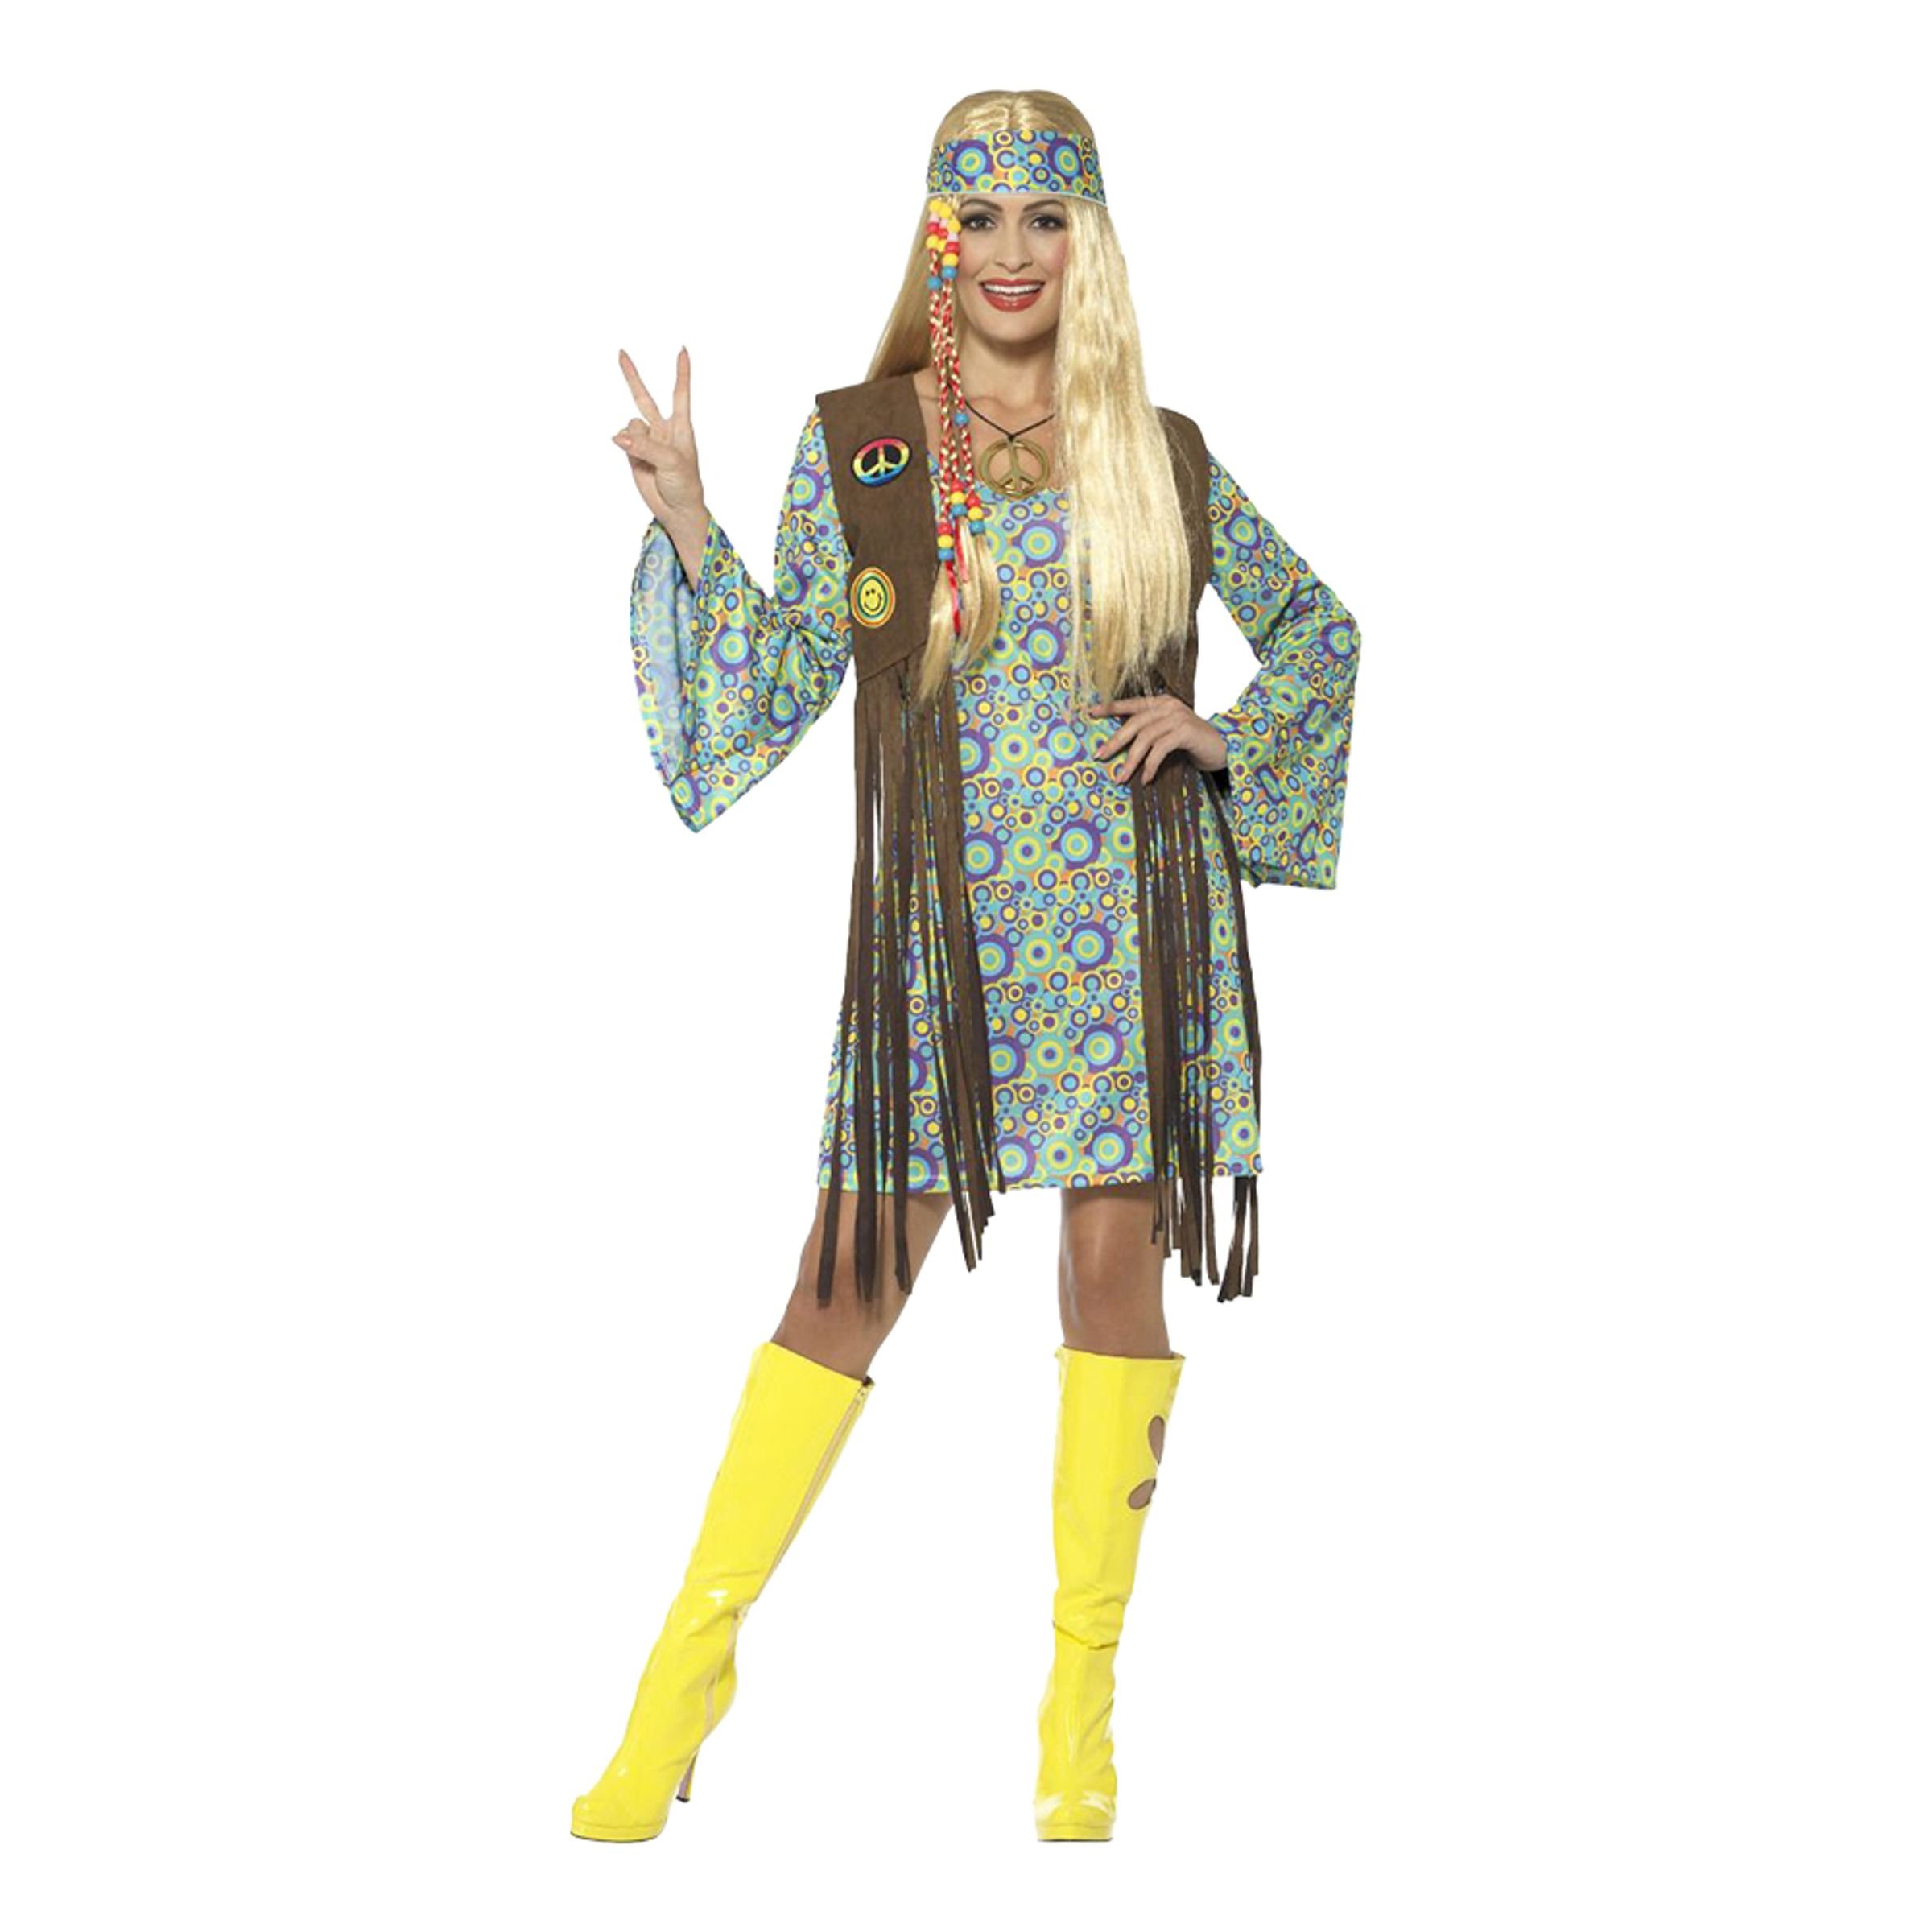 60-tals Hippie Klänning Maskeraddräkt - Medium